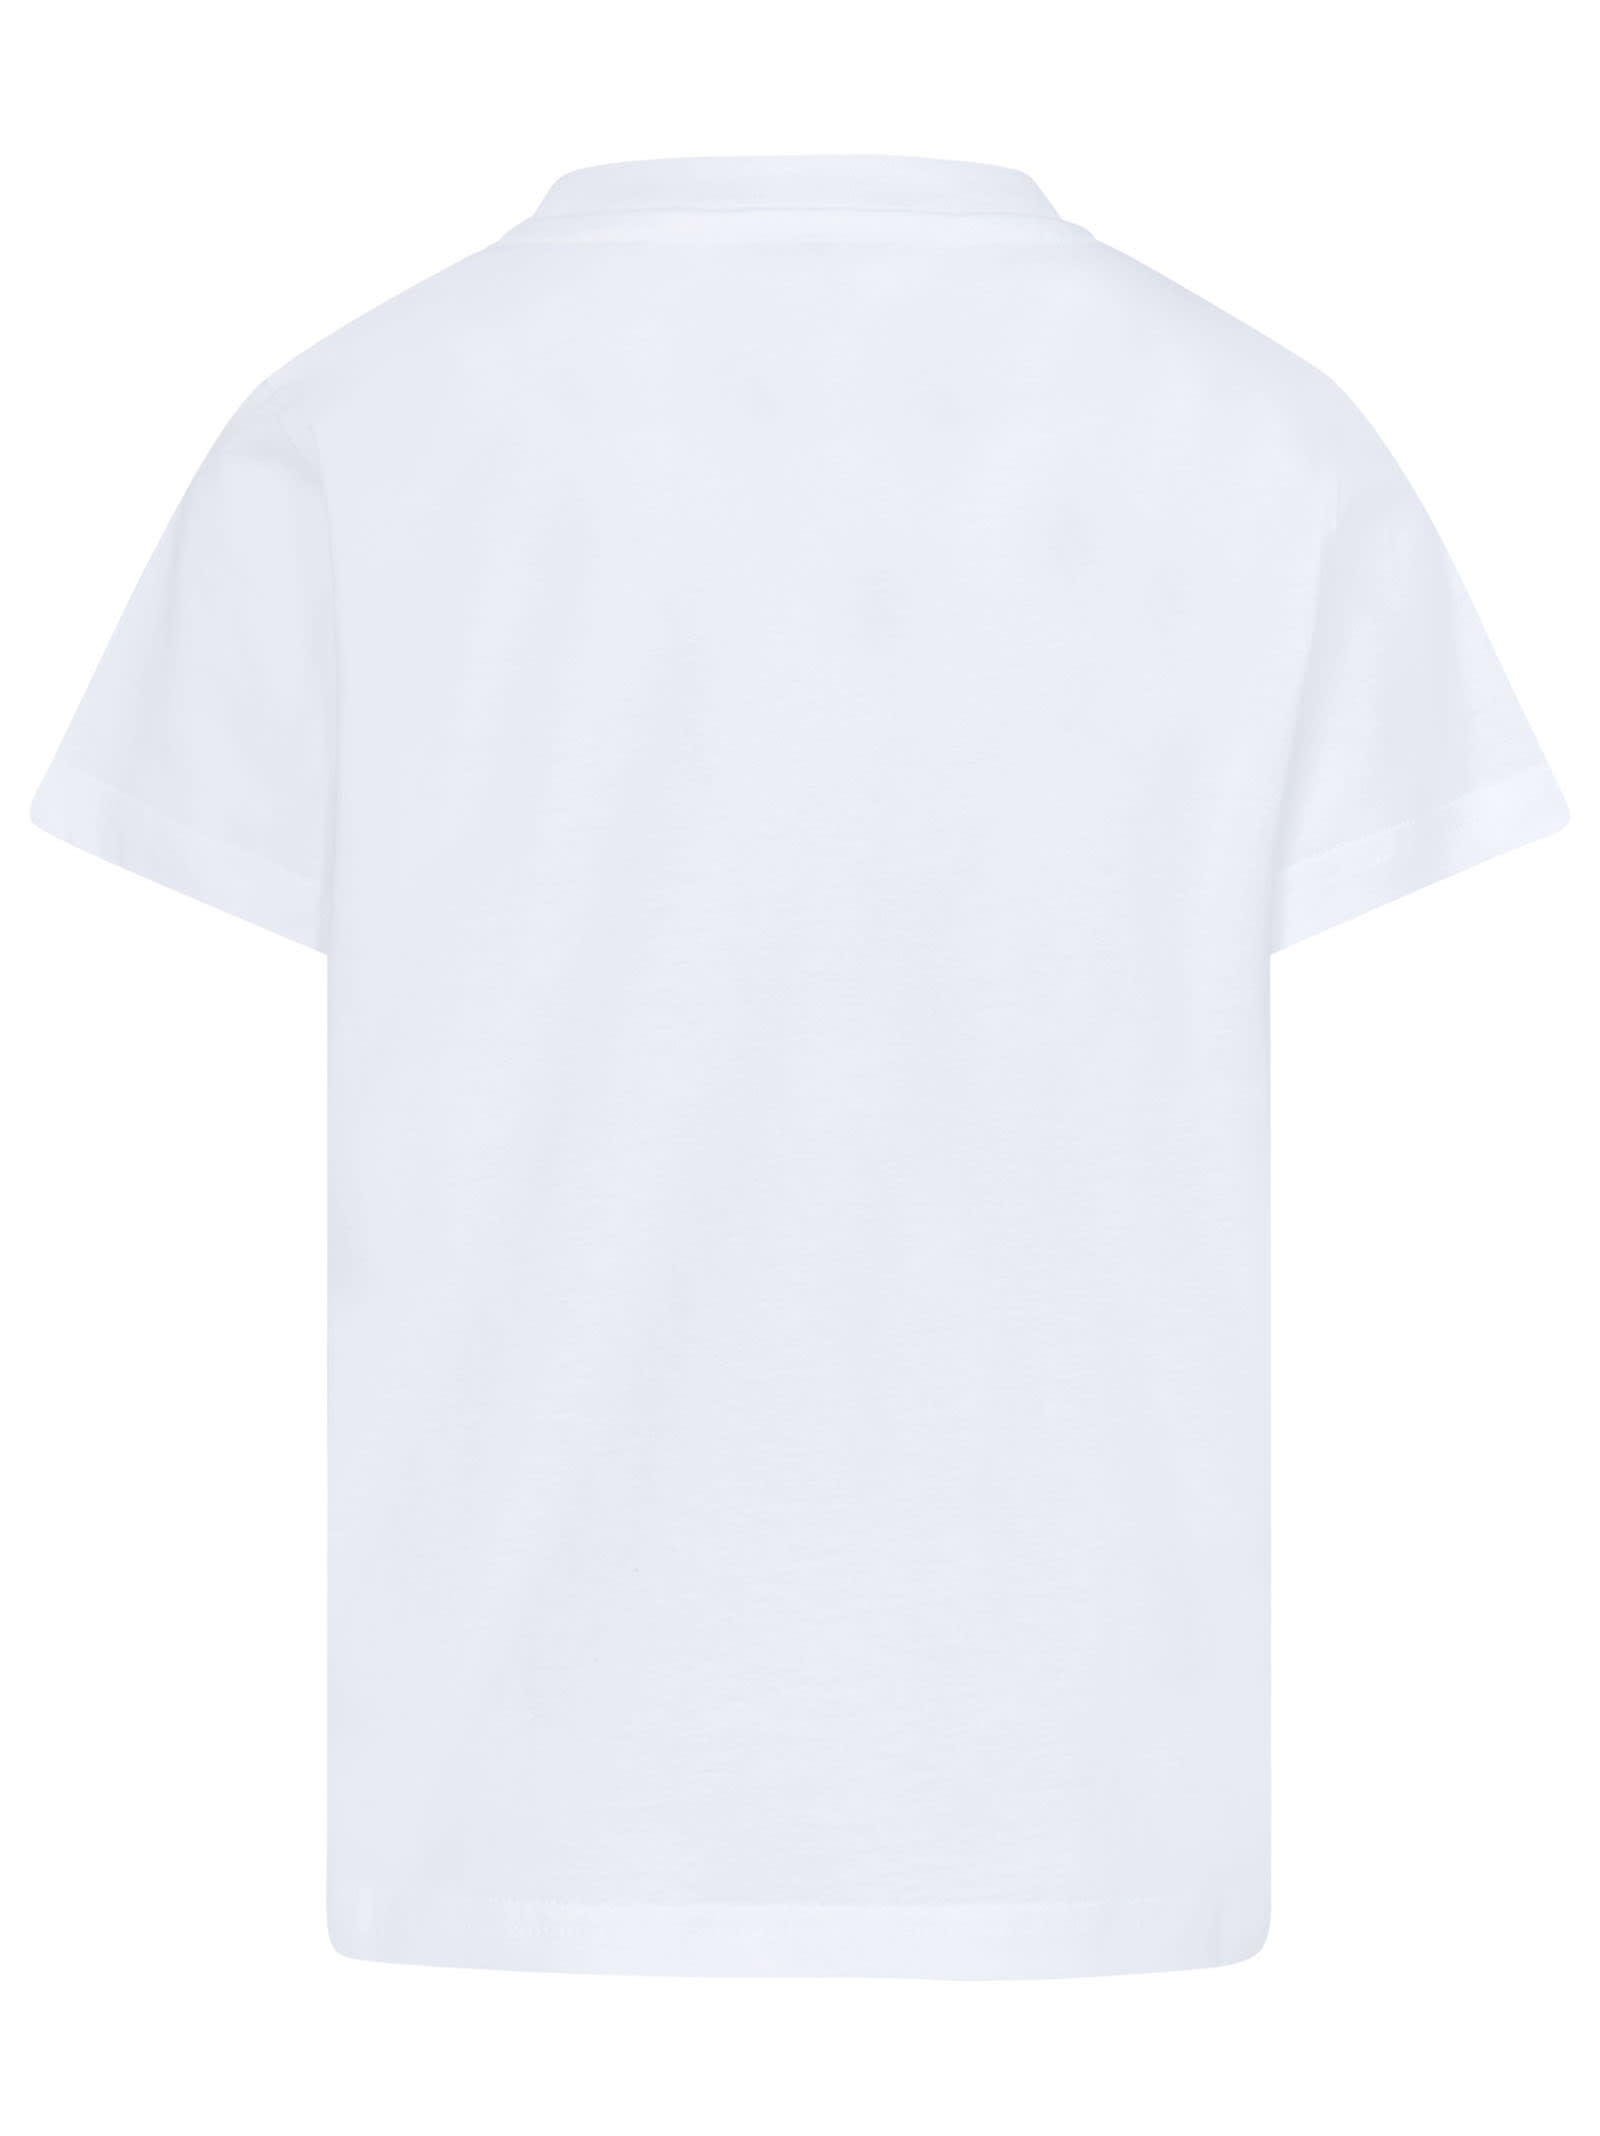 Shop Moncler T-shirt